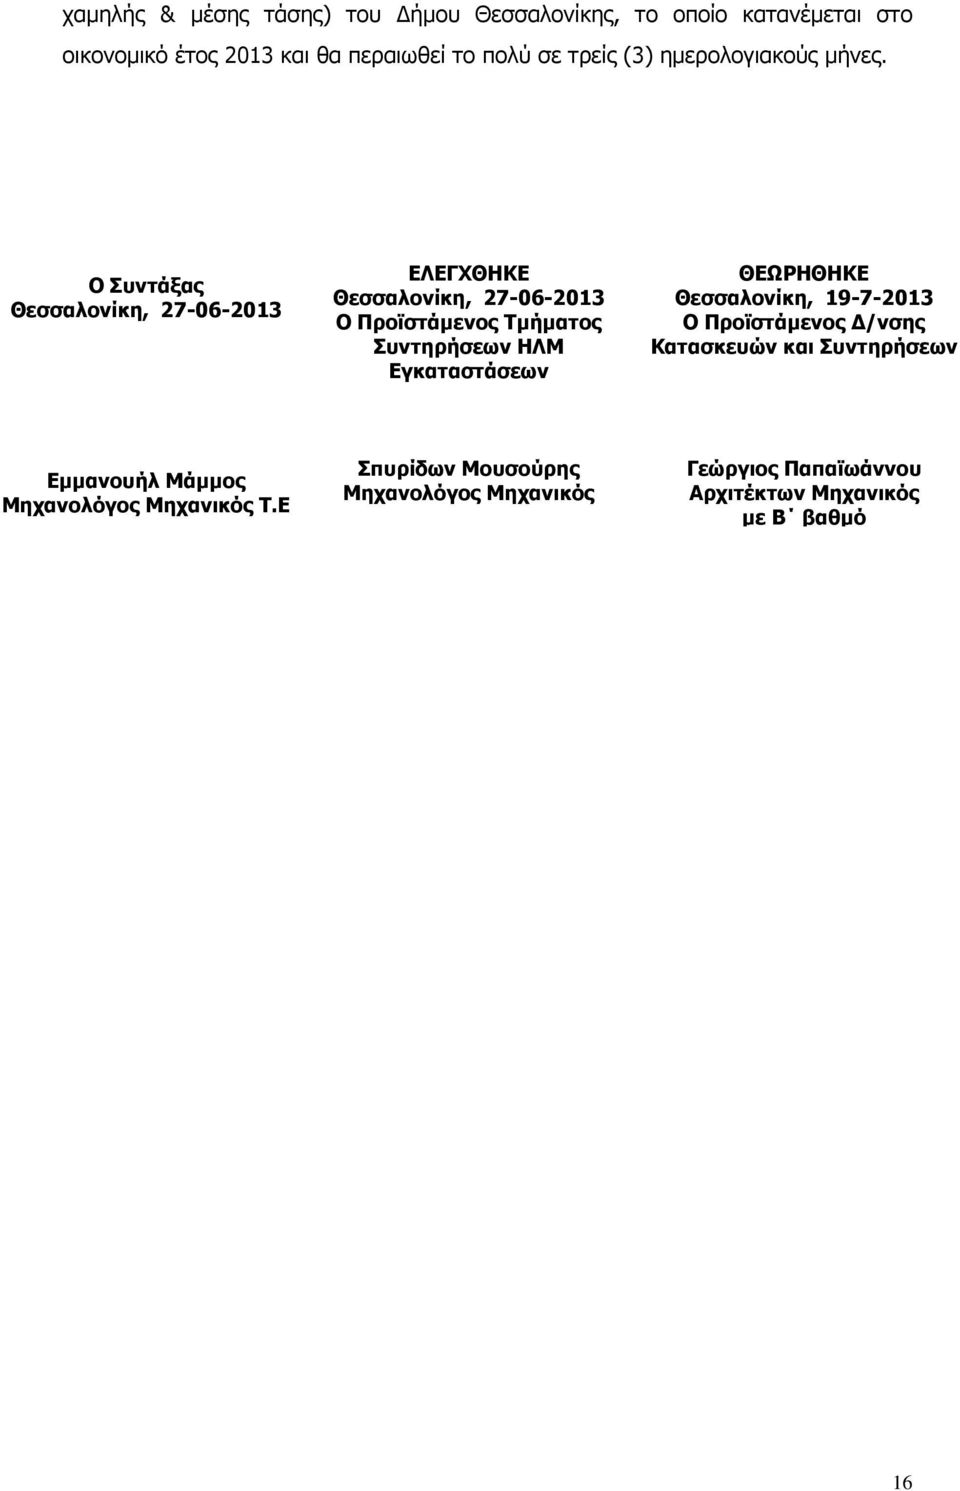 Ο Συντάξας Θεσσαλονίκη, 27-06-2013 ΕΛΕΓΧΘΗΚΕ Θεσσαλονίκη, 27-06-2013 Ο Προϊστάµενος Τµήµατος Συντηρήσεων ΗΛΜ Εγκαταστάσεων